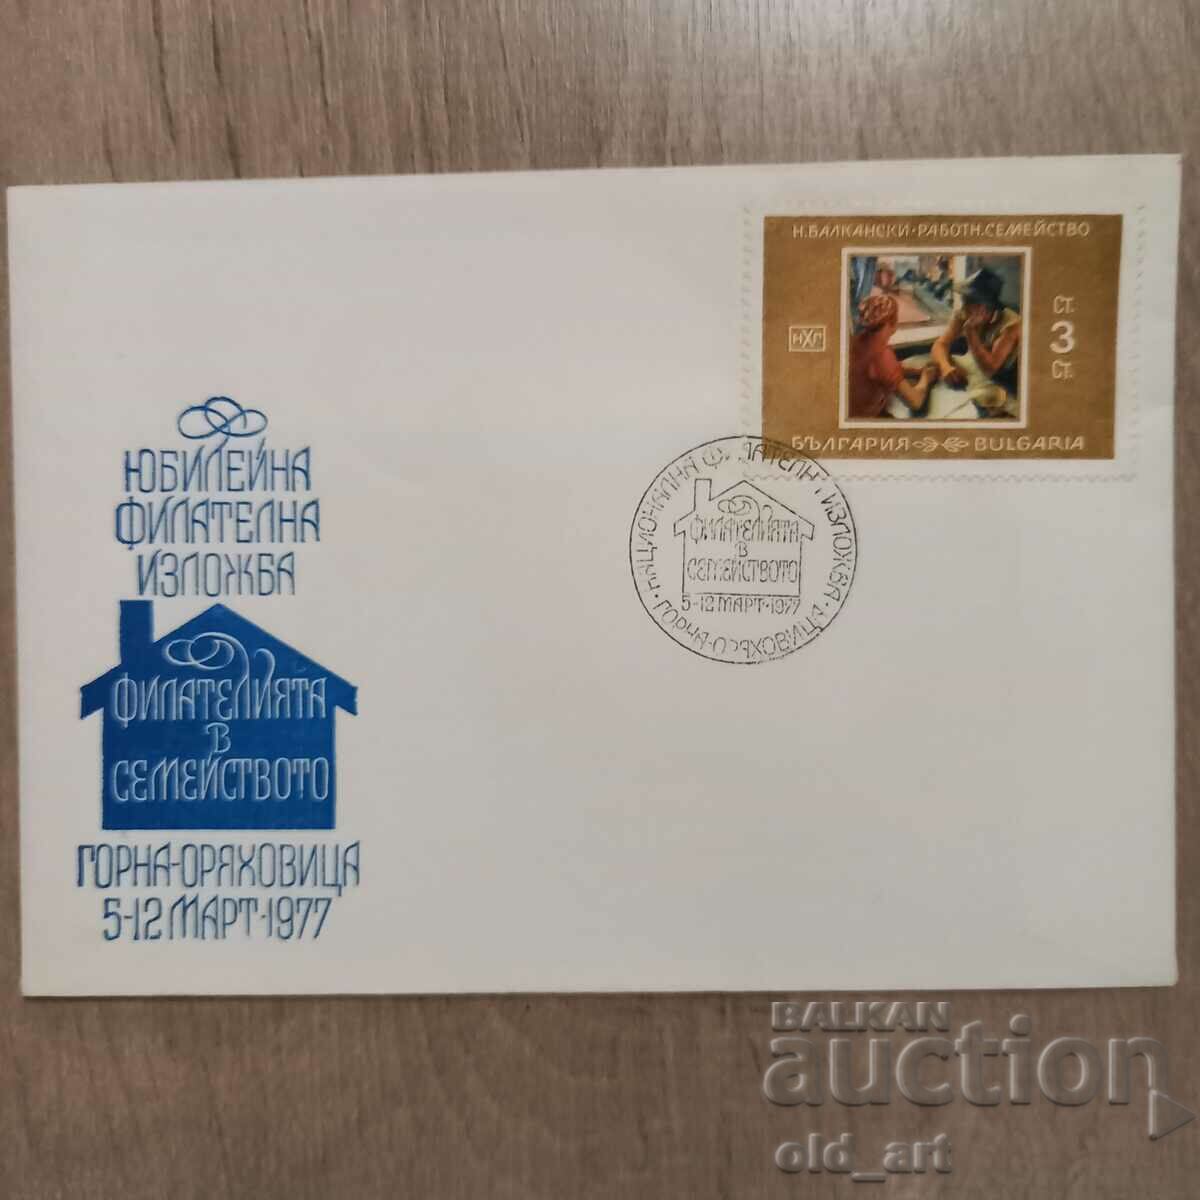 Ταχυδρομικός φάκελος - Ιωβηλαία Φιλοτελική Έκθεση - Φιλοτελισμός στην οικογένεια